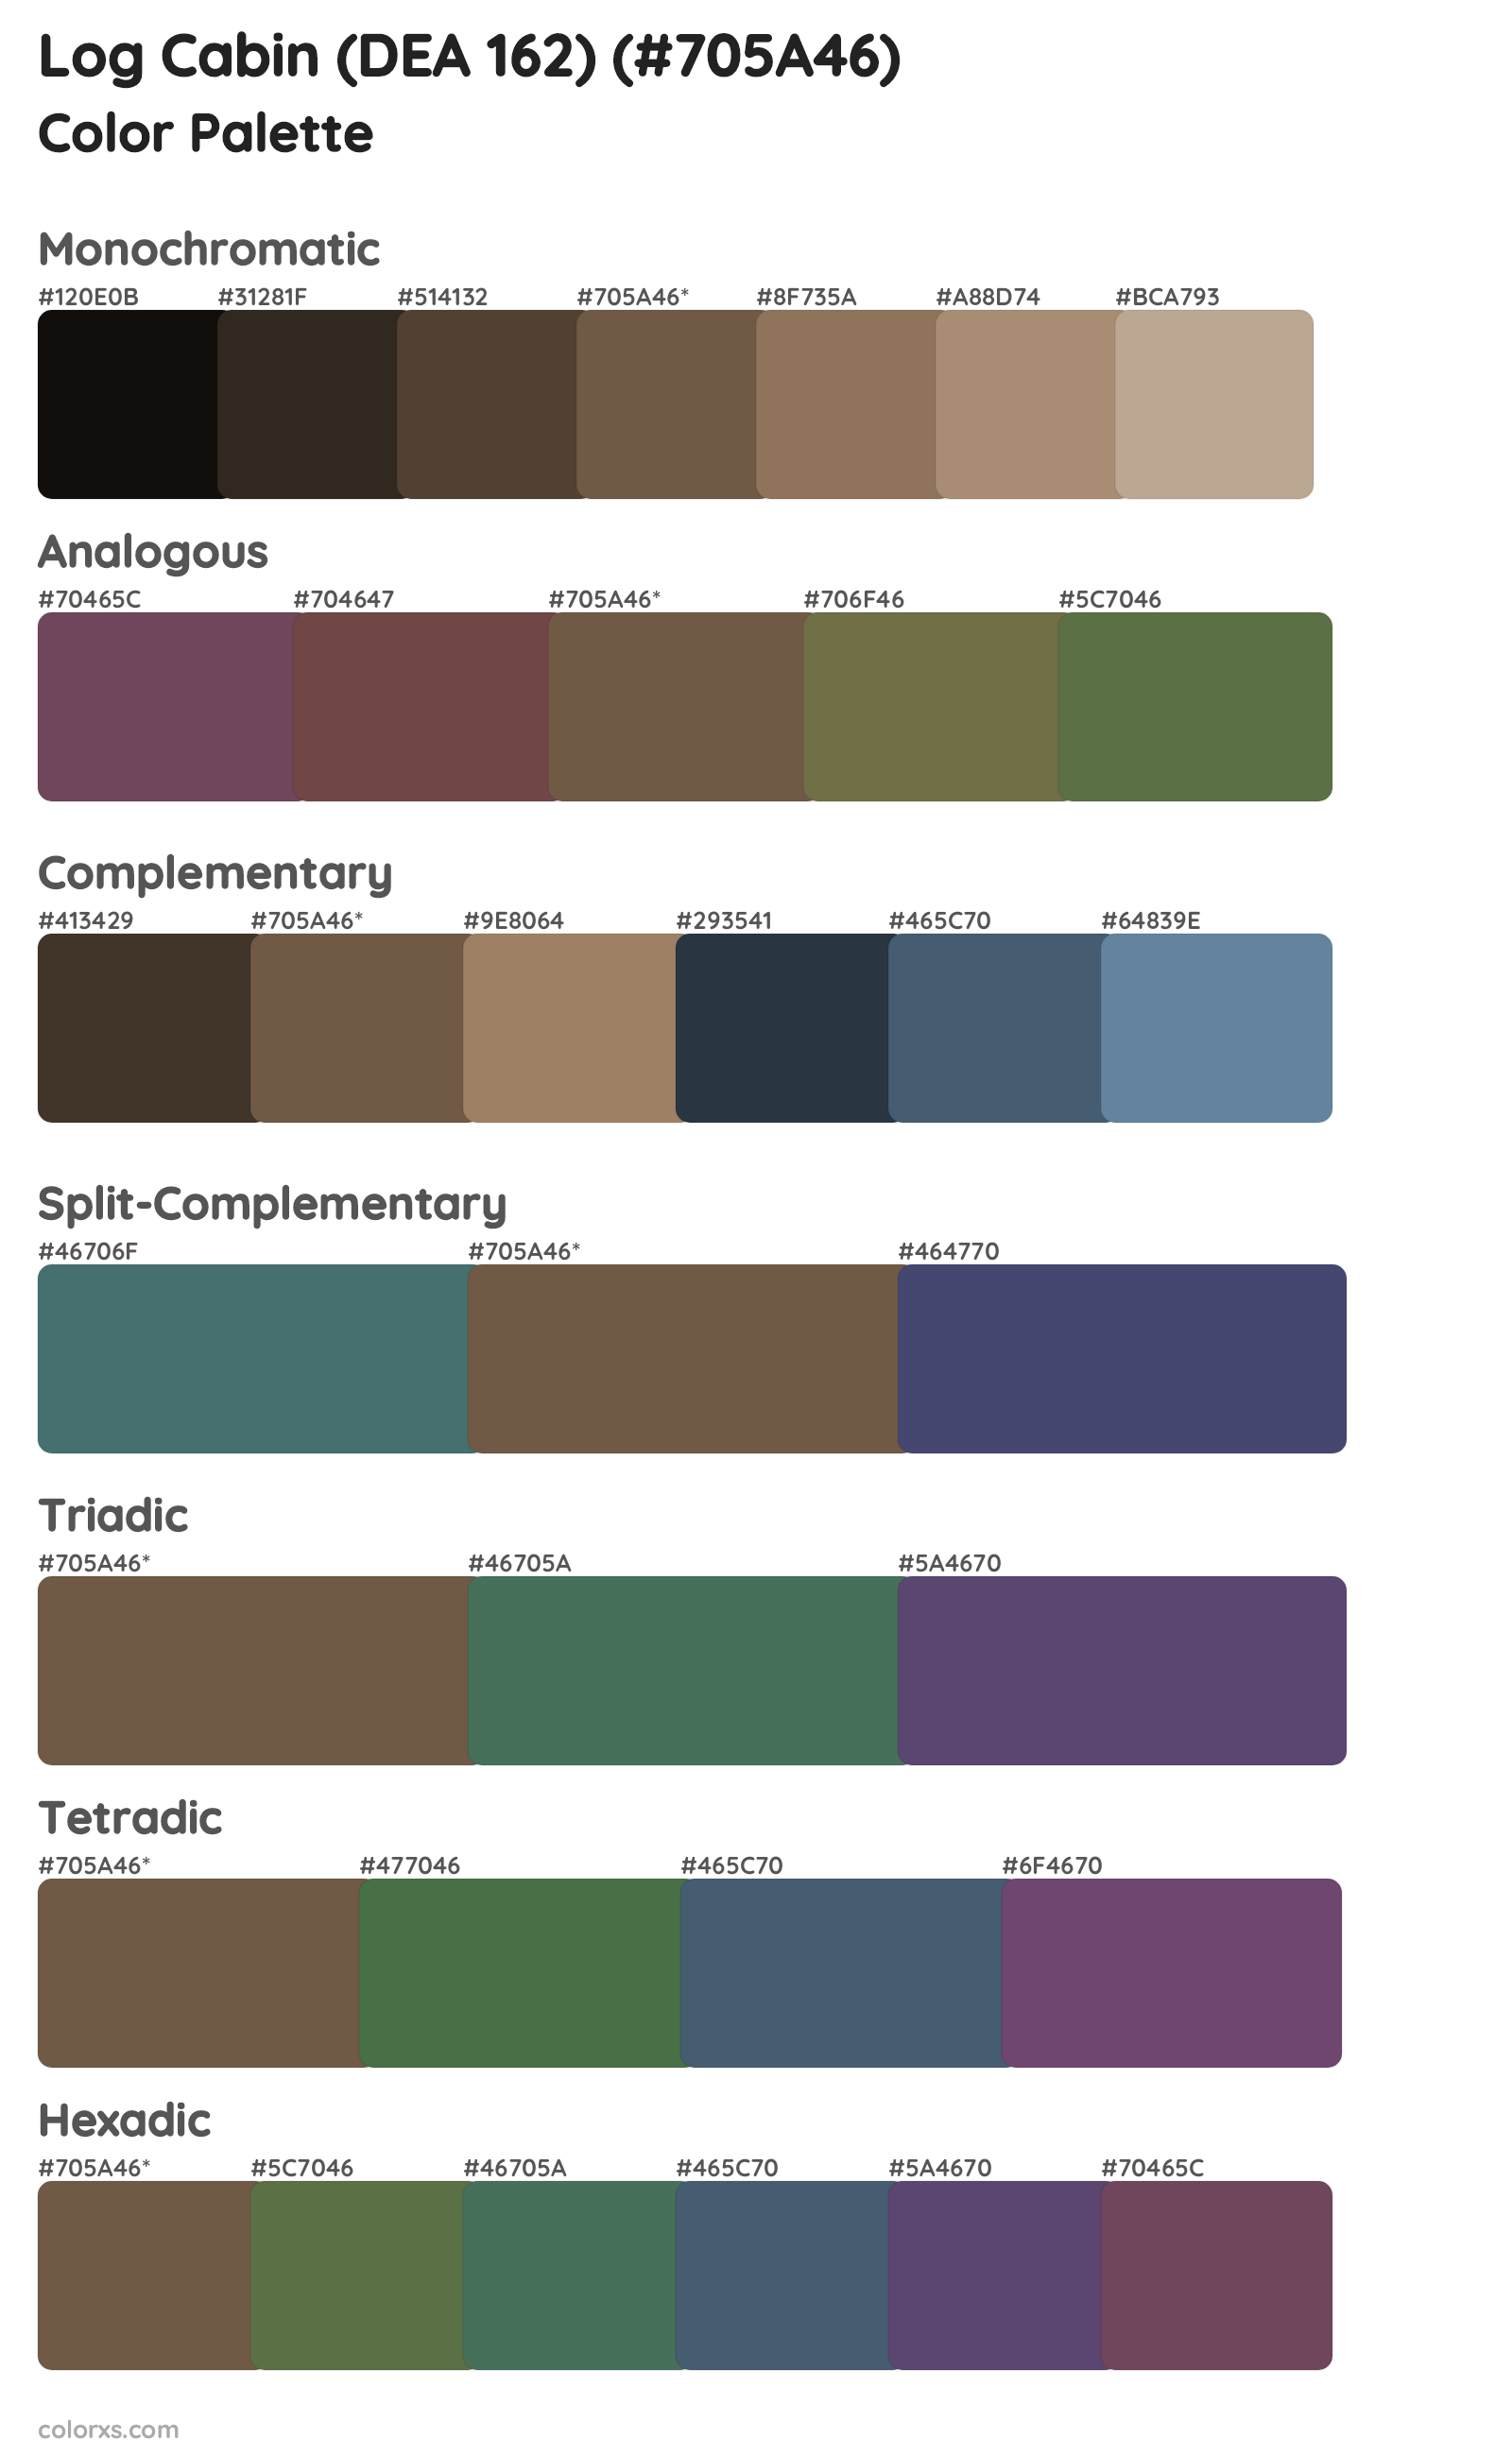 Log Cabin (DEA 162) Color Scheme Palettes